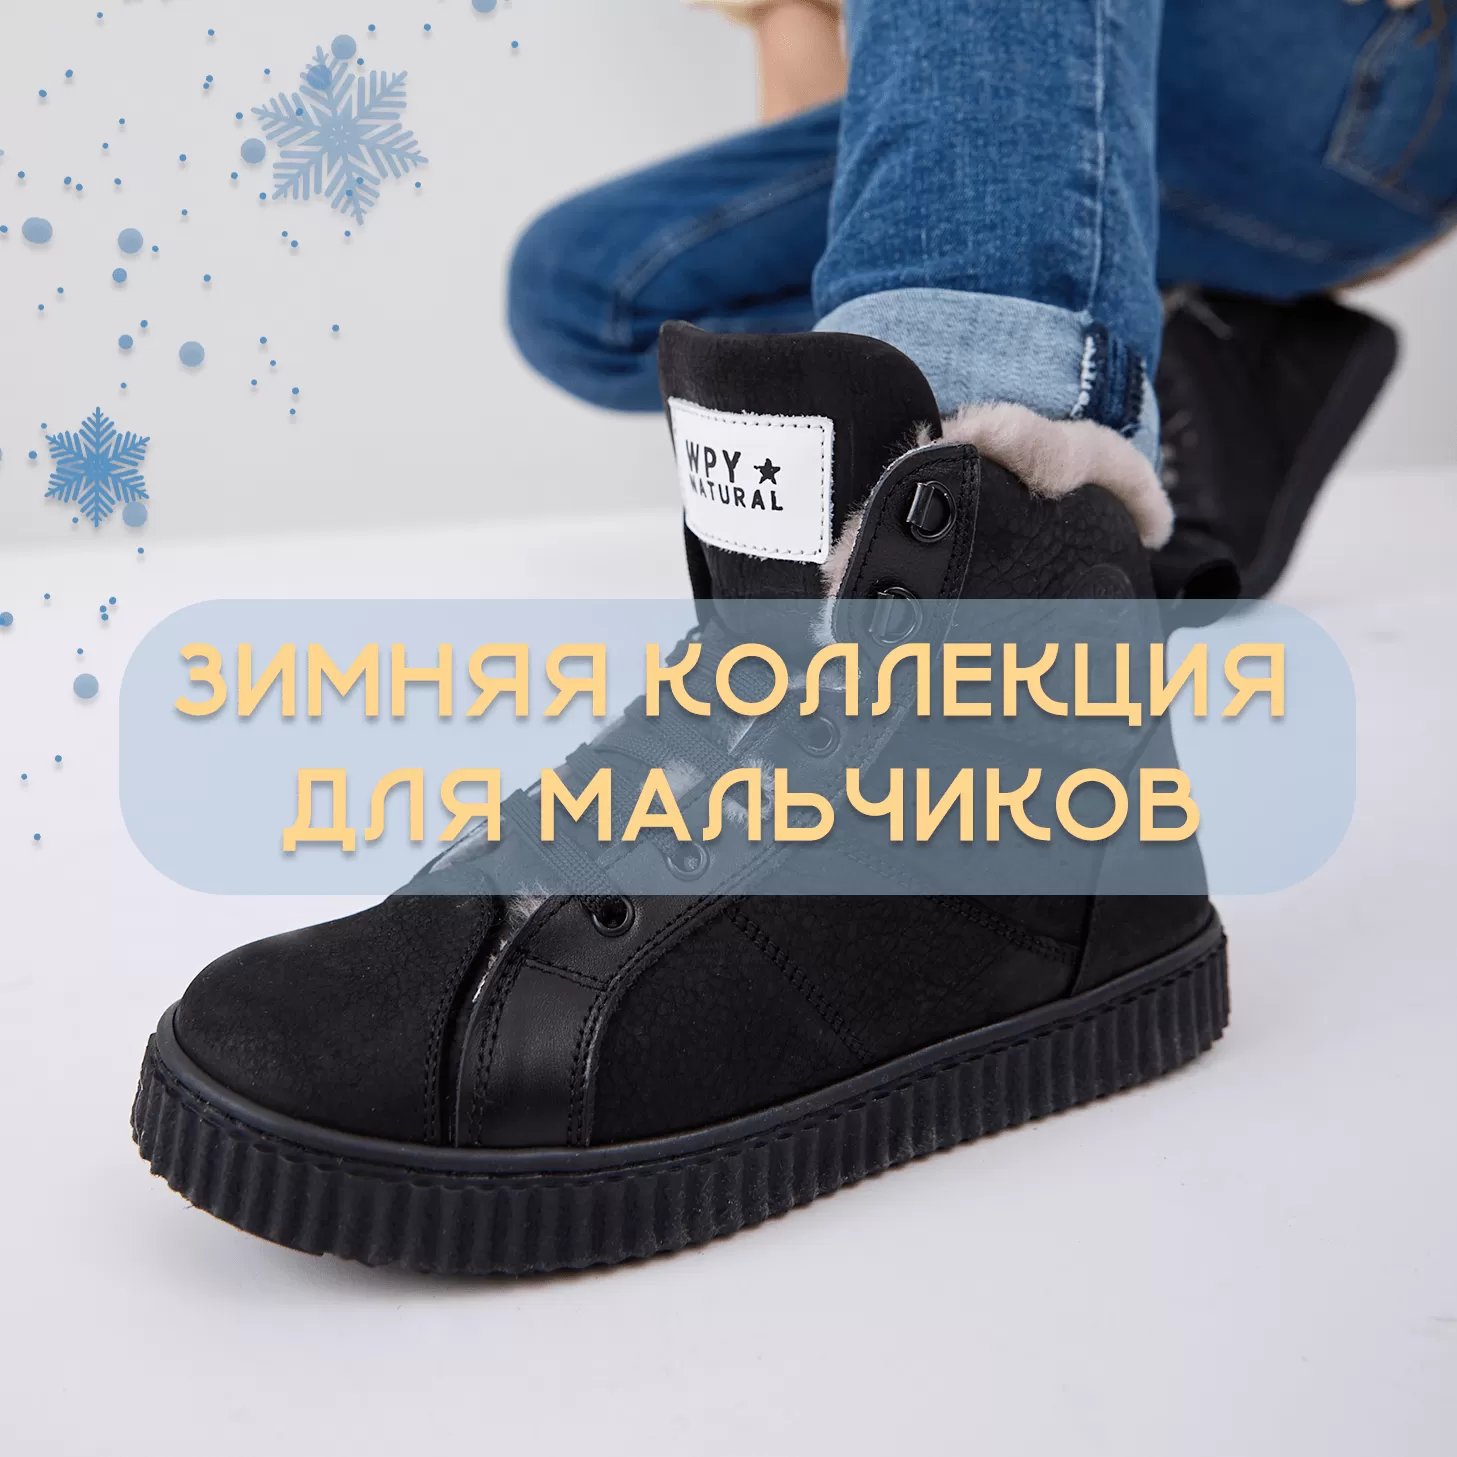 Обувь для мальчиков – купить в интернет-магазине Kari